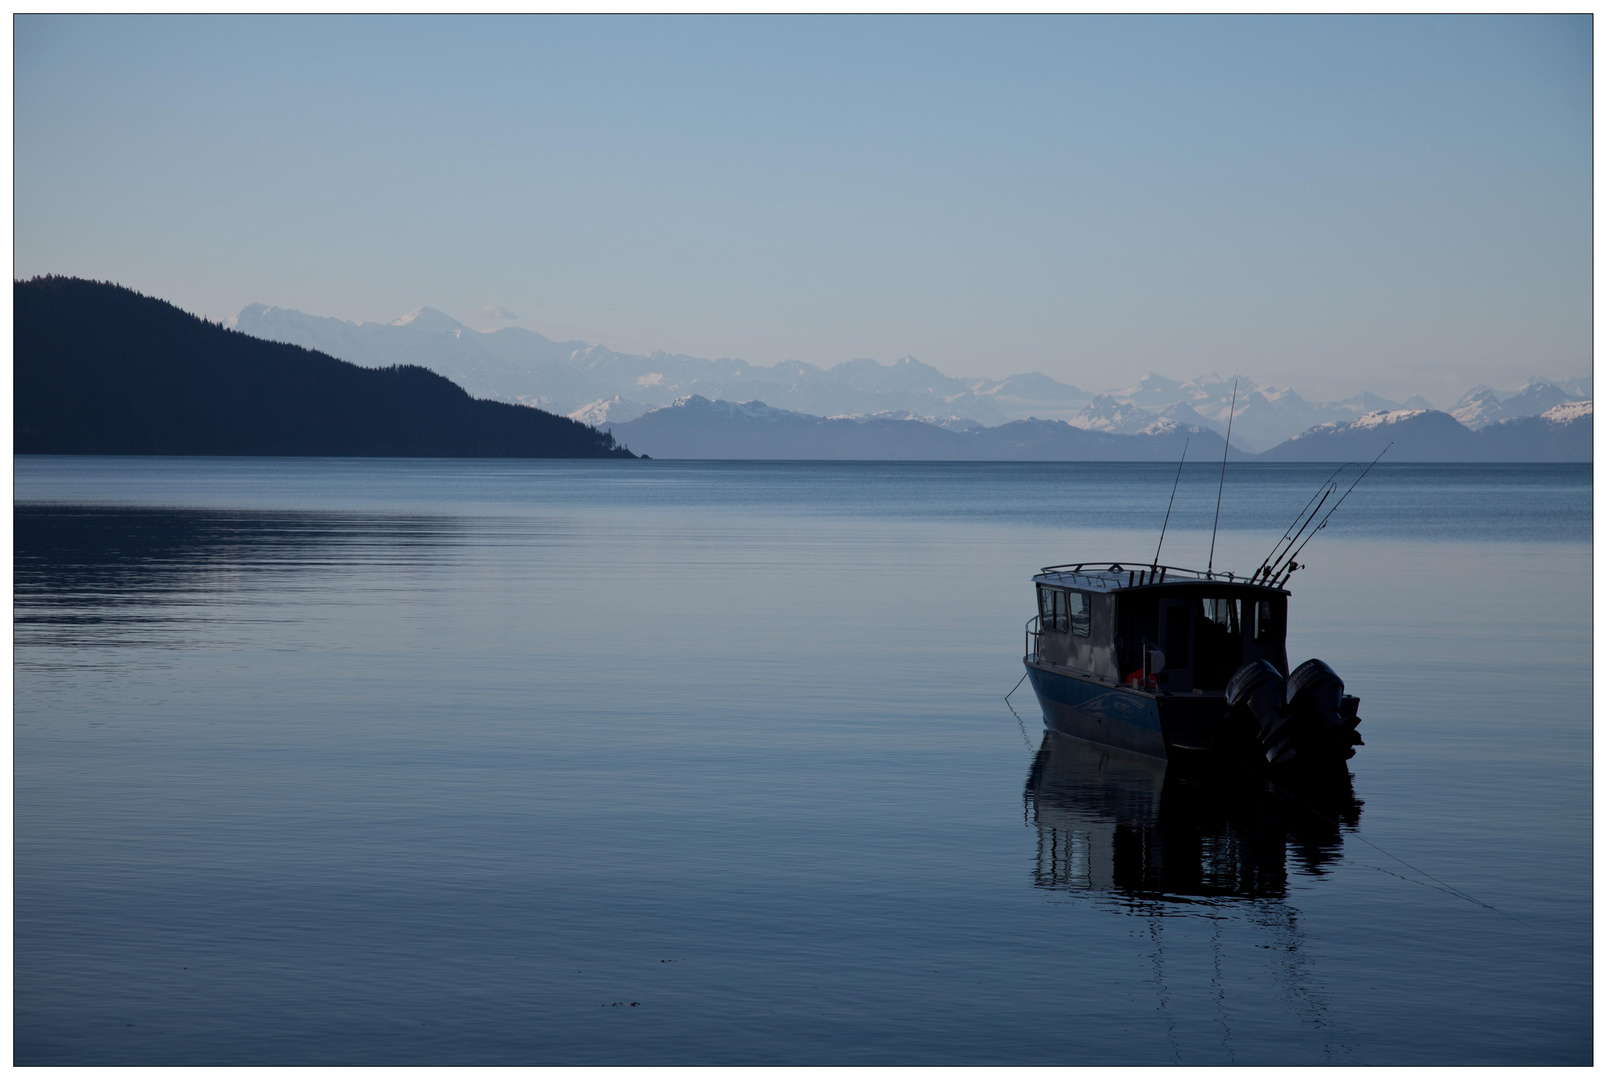 Prince William Sound, Alaska 2013